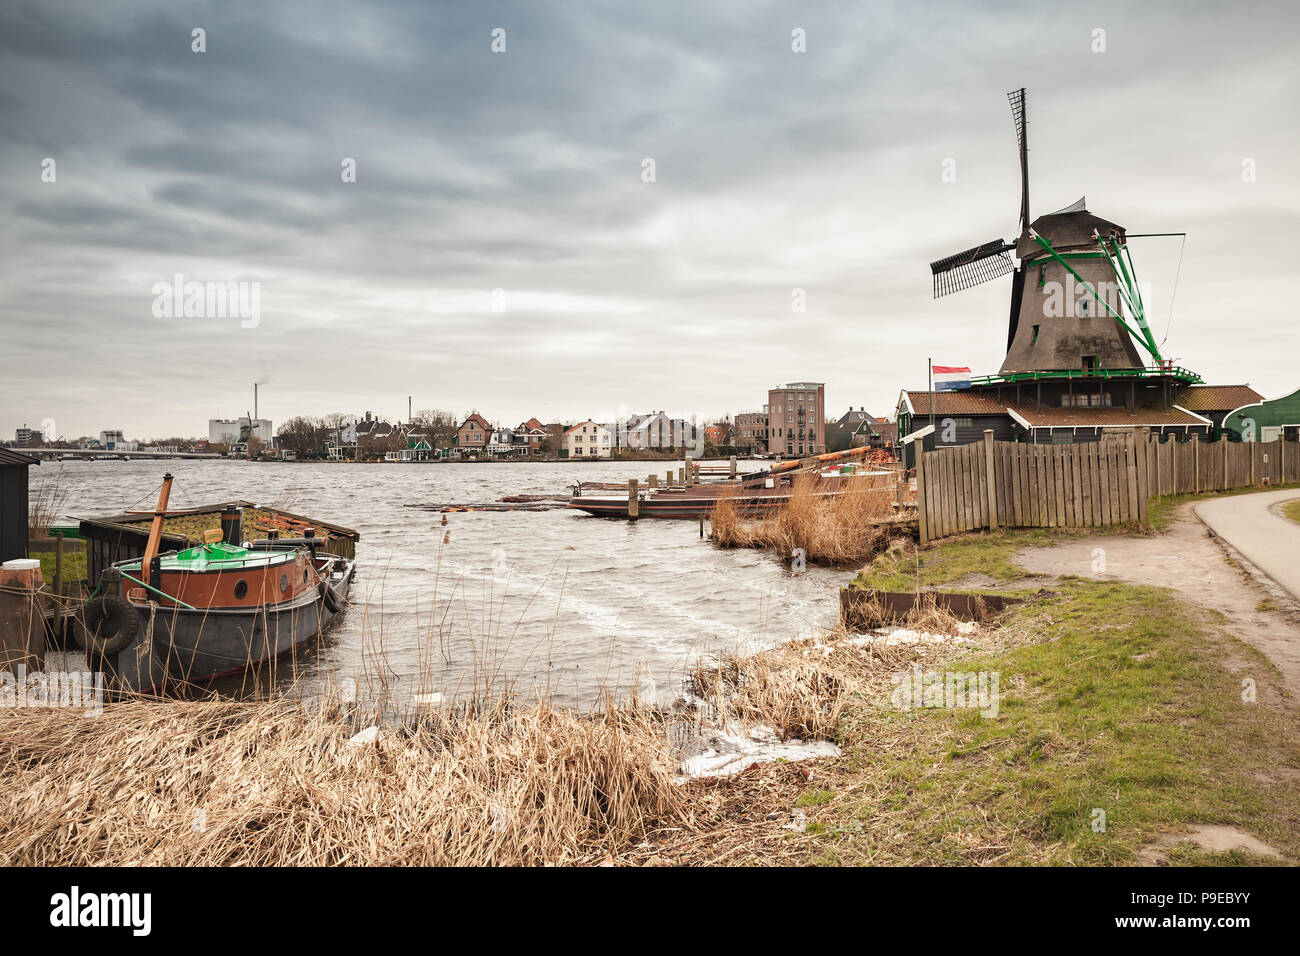 Küsten holländische Landschaft mit Windmühle. Zaanse Schans Stadt, beliebten touristischen Attraktionen der Niederlande. Vorort von Amsterdam Stockfoto